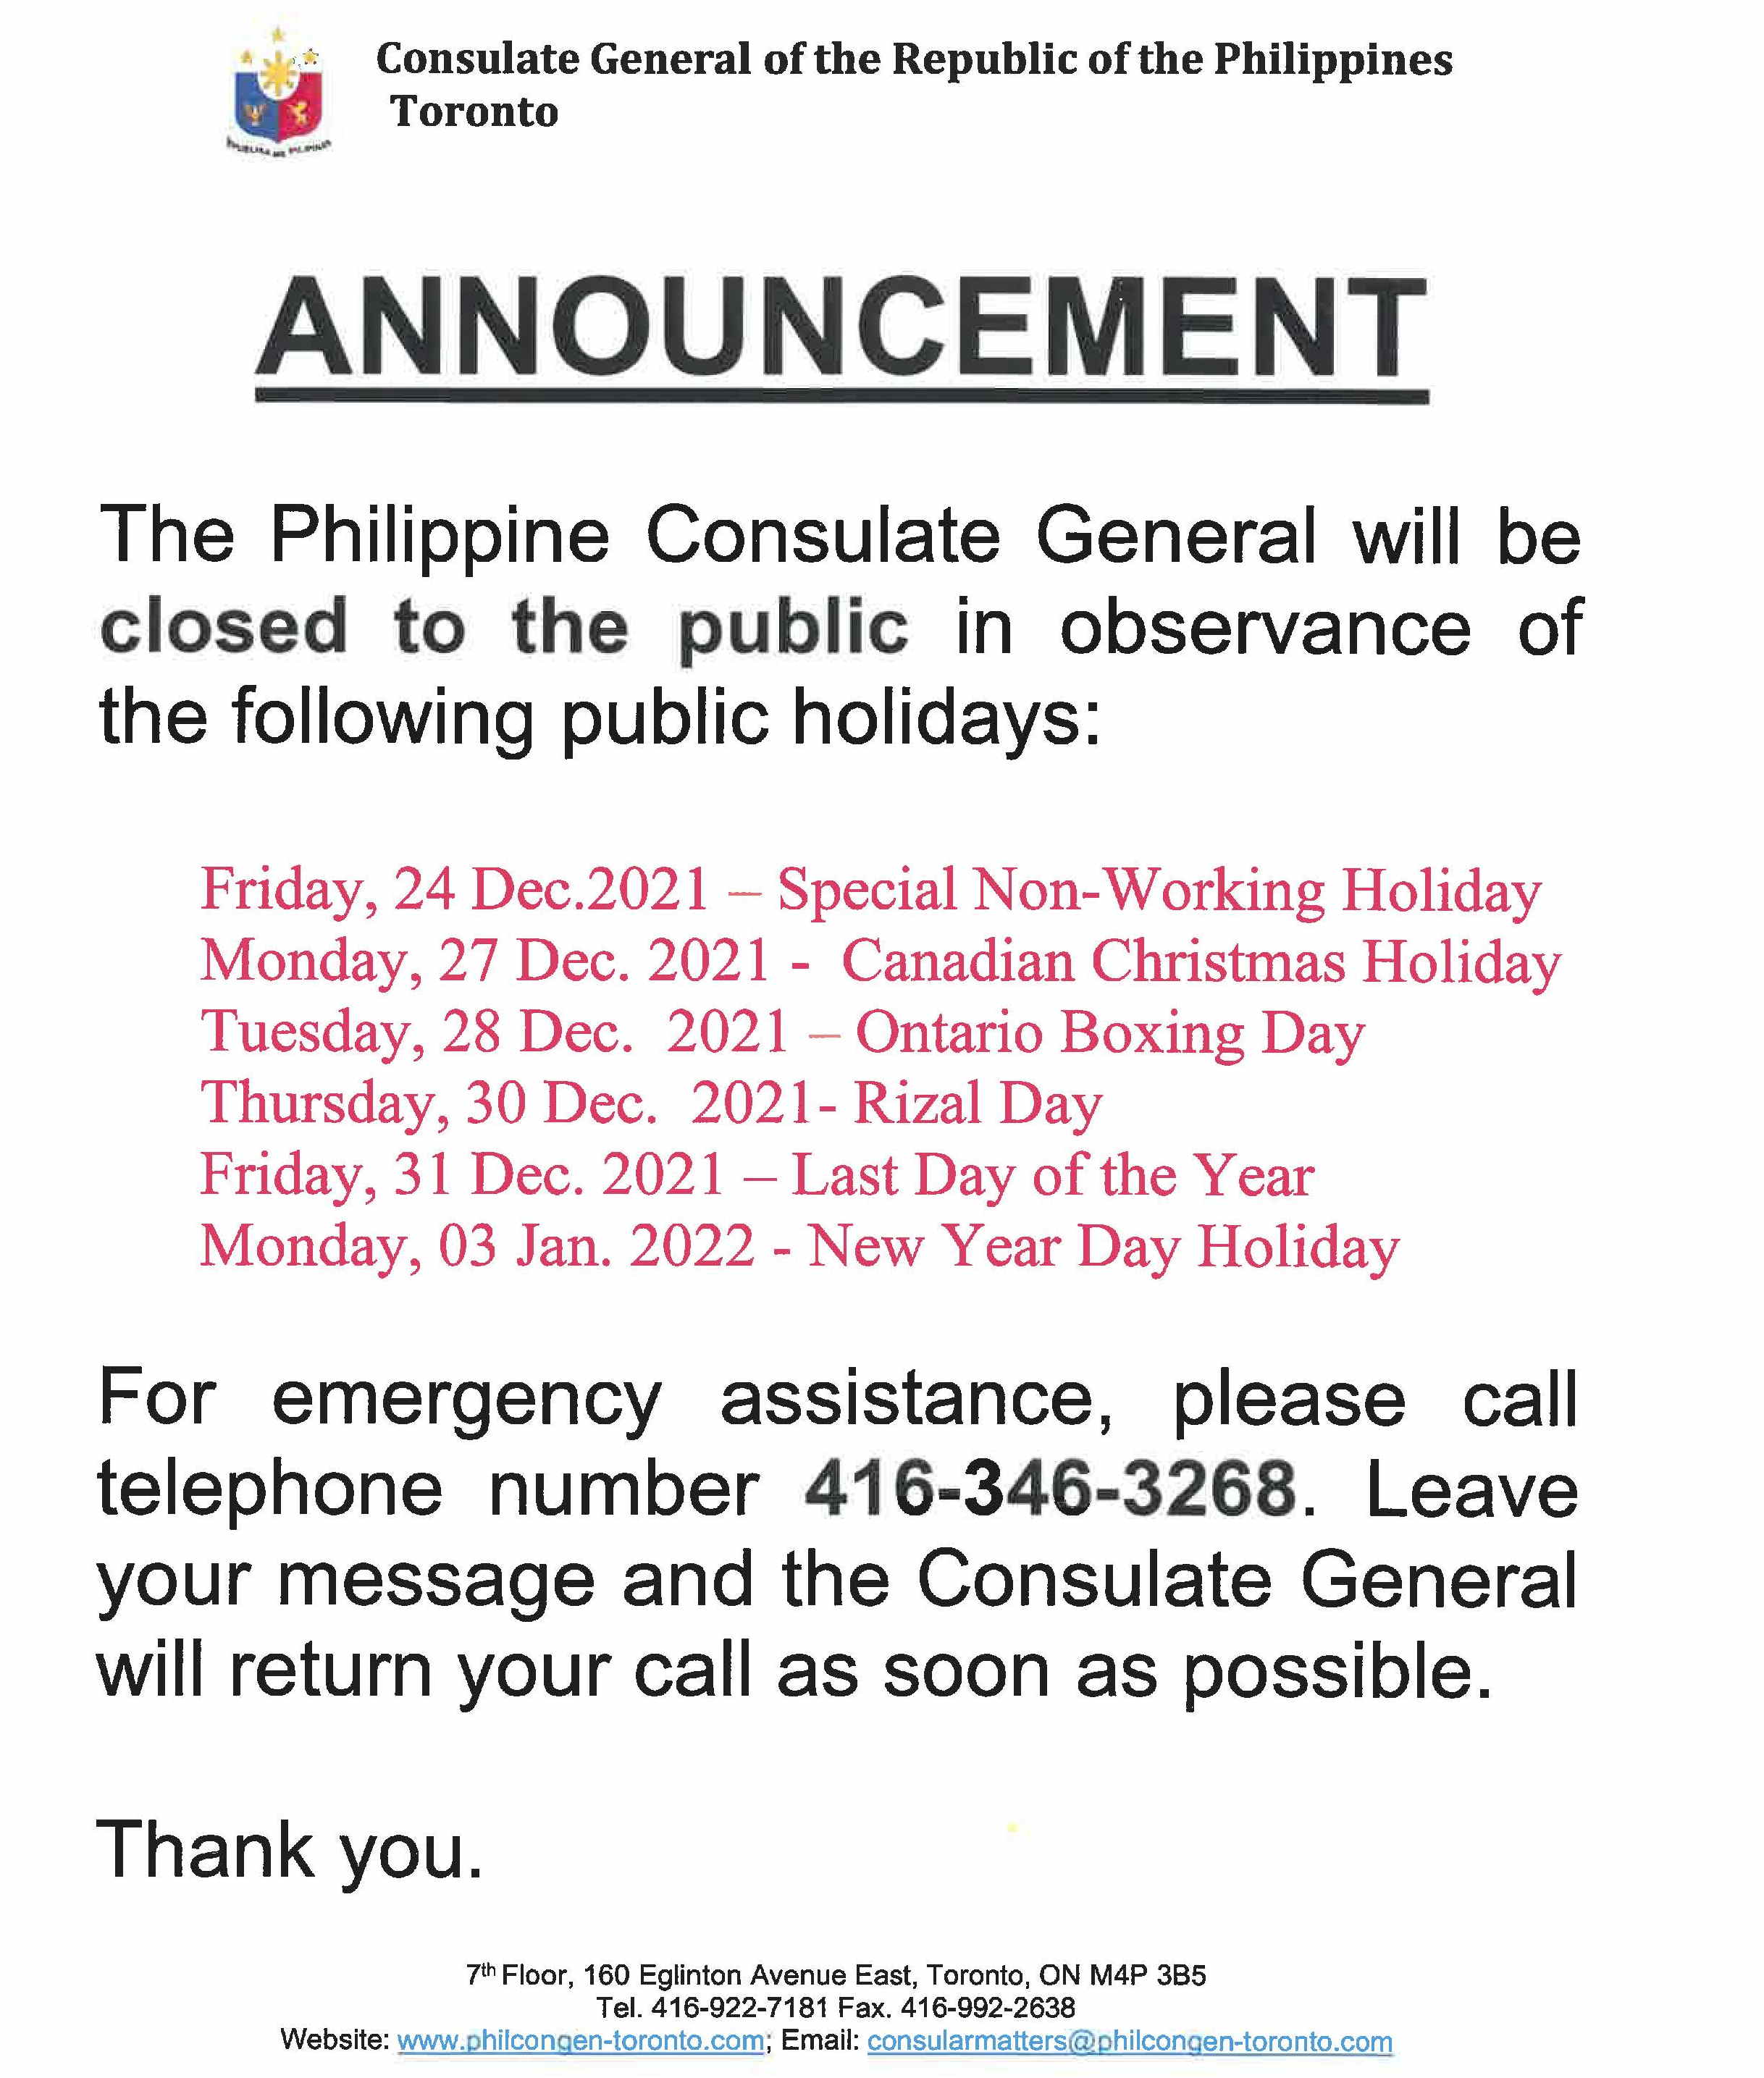 holiday notice